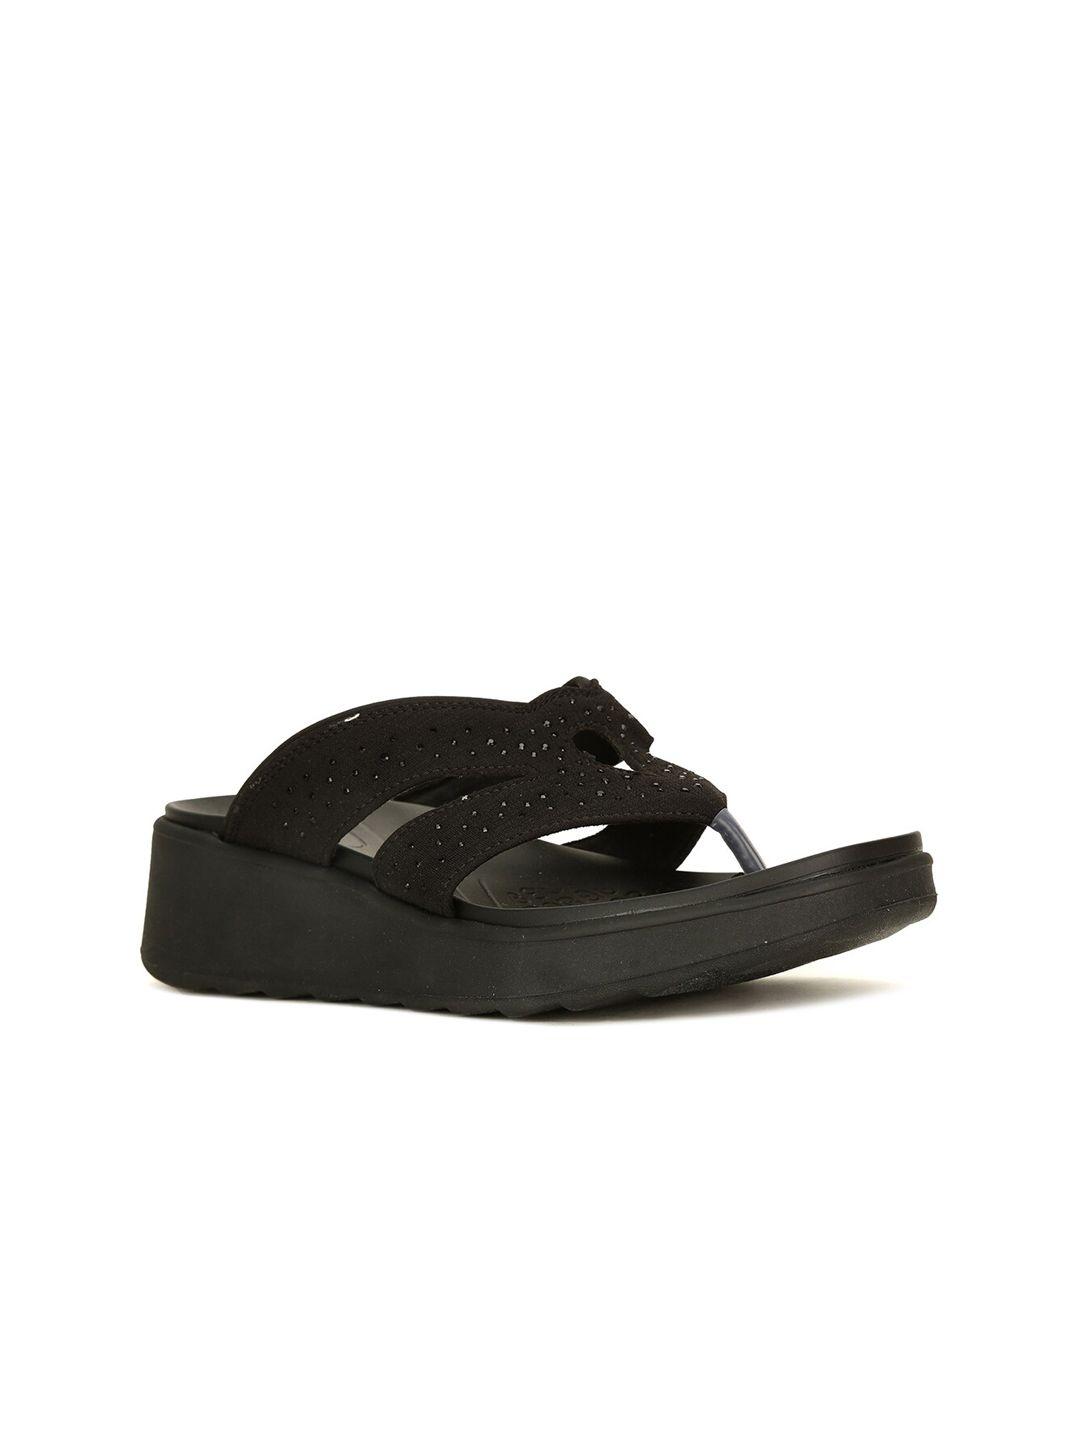 naturalizer black embellished comfort sandals with laser cuts